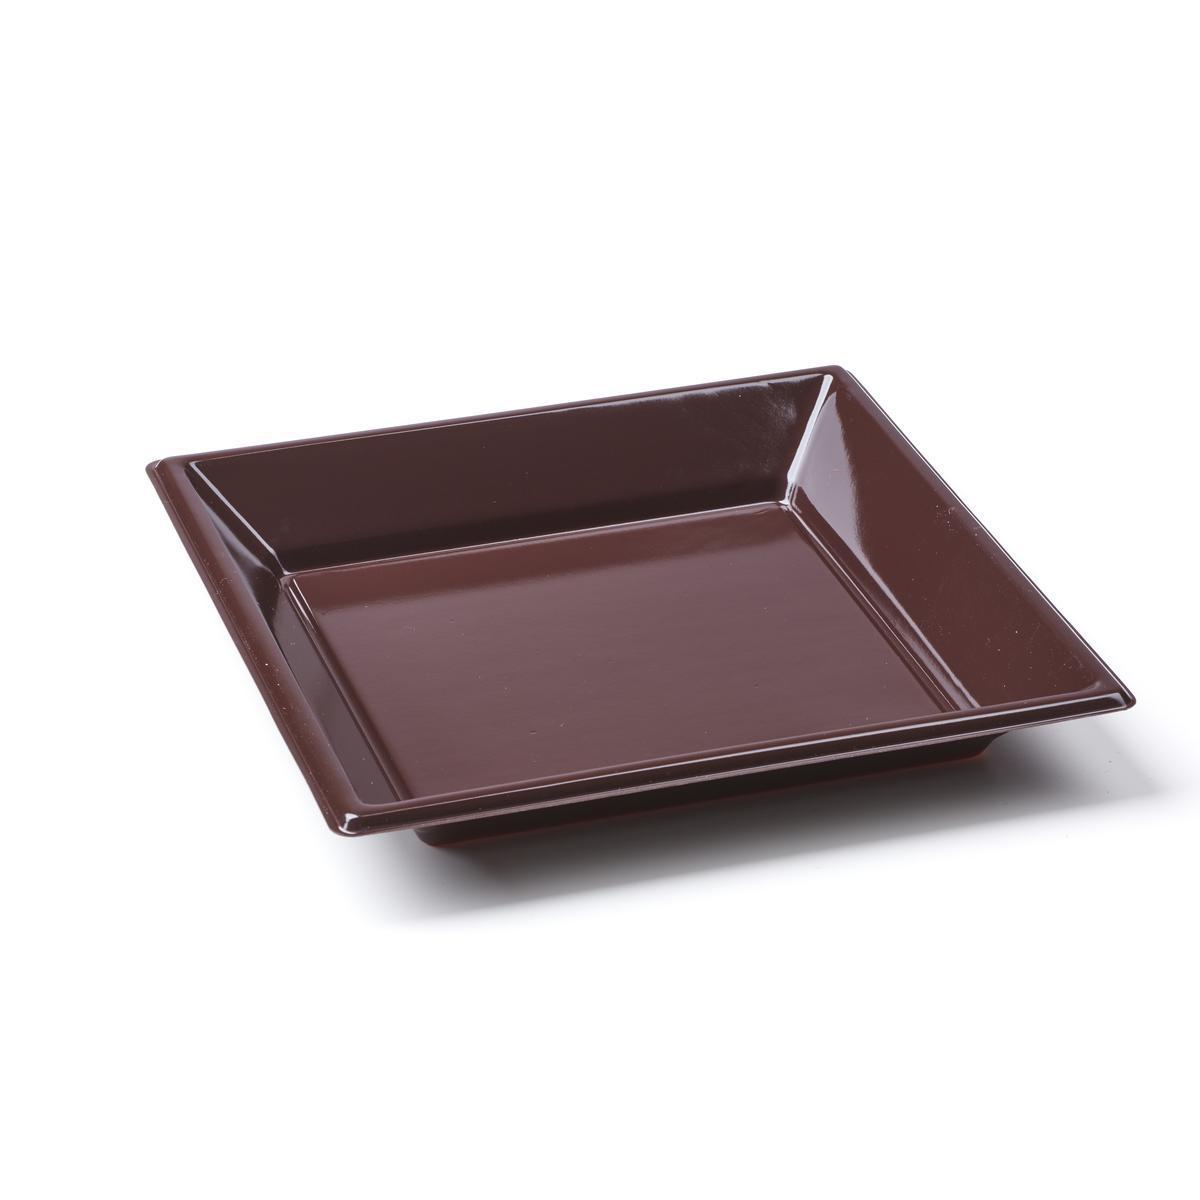 Lot de 8 assiettes creuses - plastique - 18 cm x 18 cm x2,3 cm - Marron chocolat